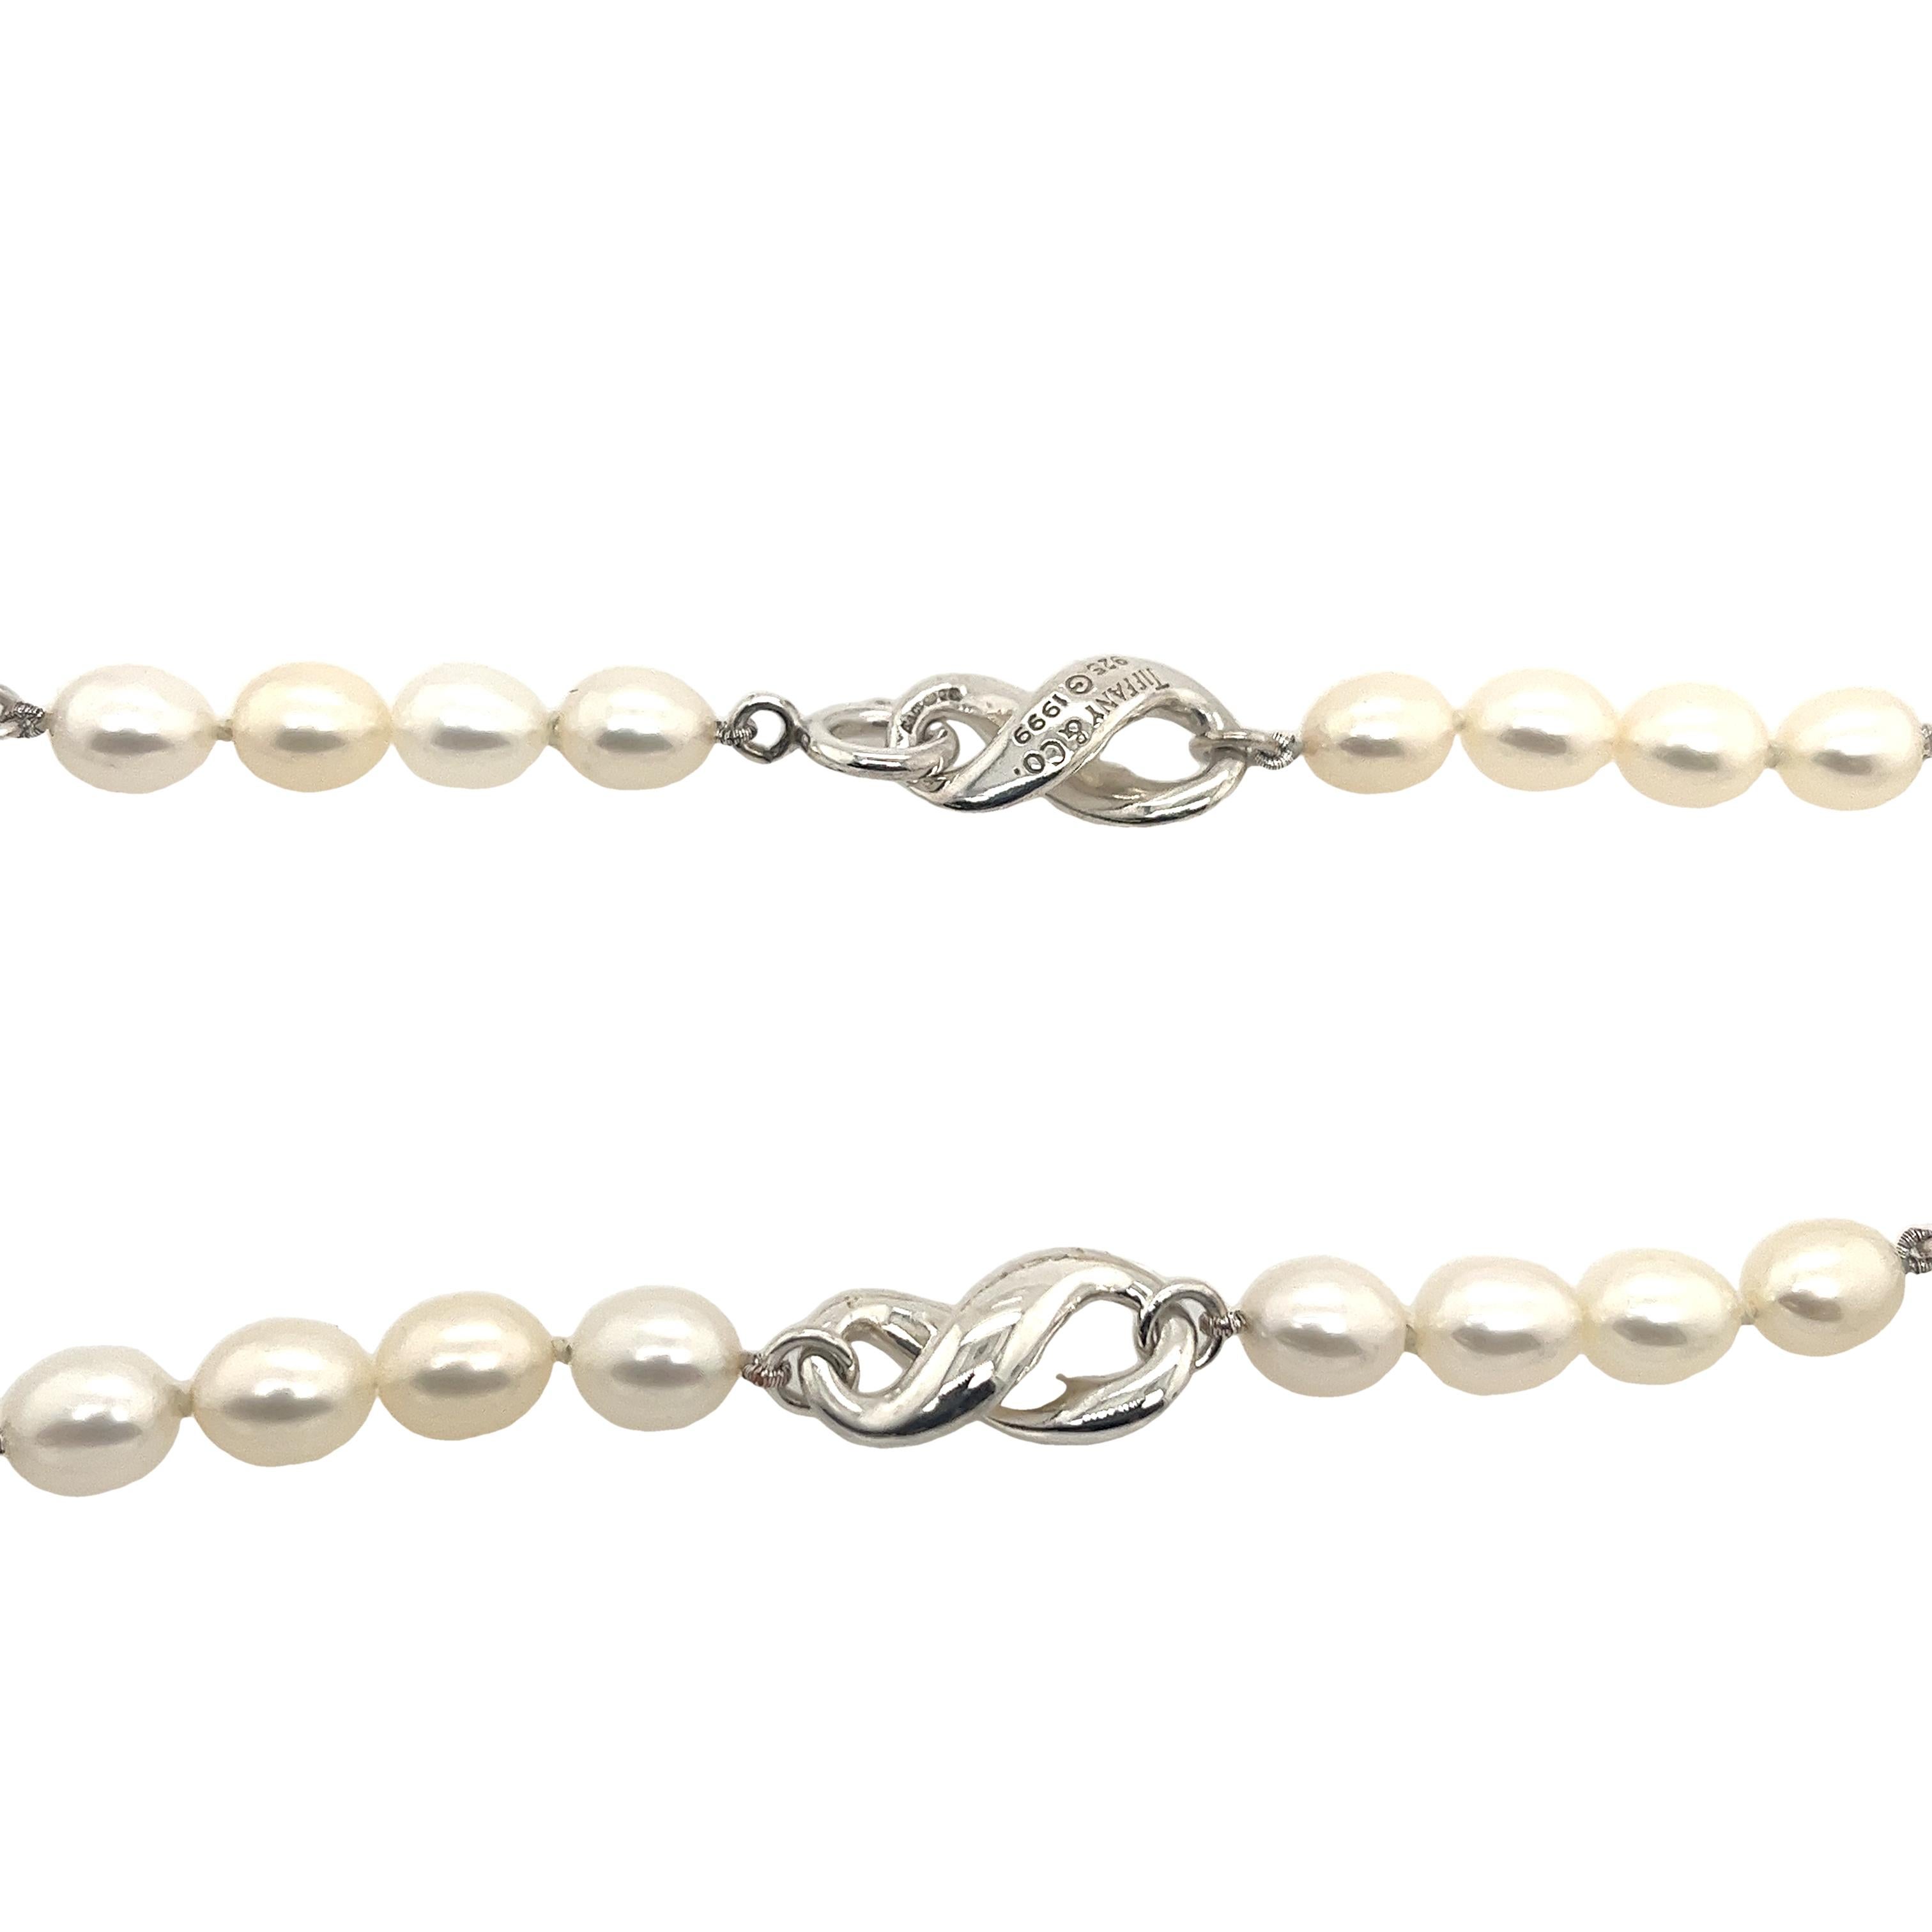 Voici le summum de l'élégance : le collier Tiffany & Co en argent sterling à figure infinie en perles blanches.  
Ce collier à couper le souffle allie beauté intemporelle et style contemporain en une seule pièce enchanteresse.
Il est gravé : TIFFANY